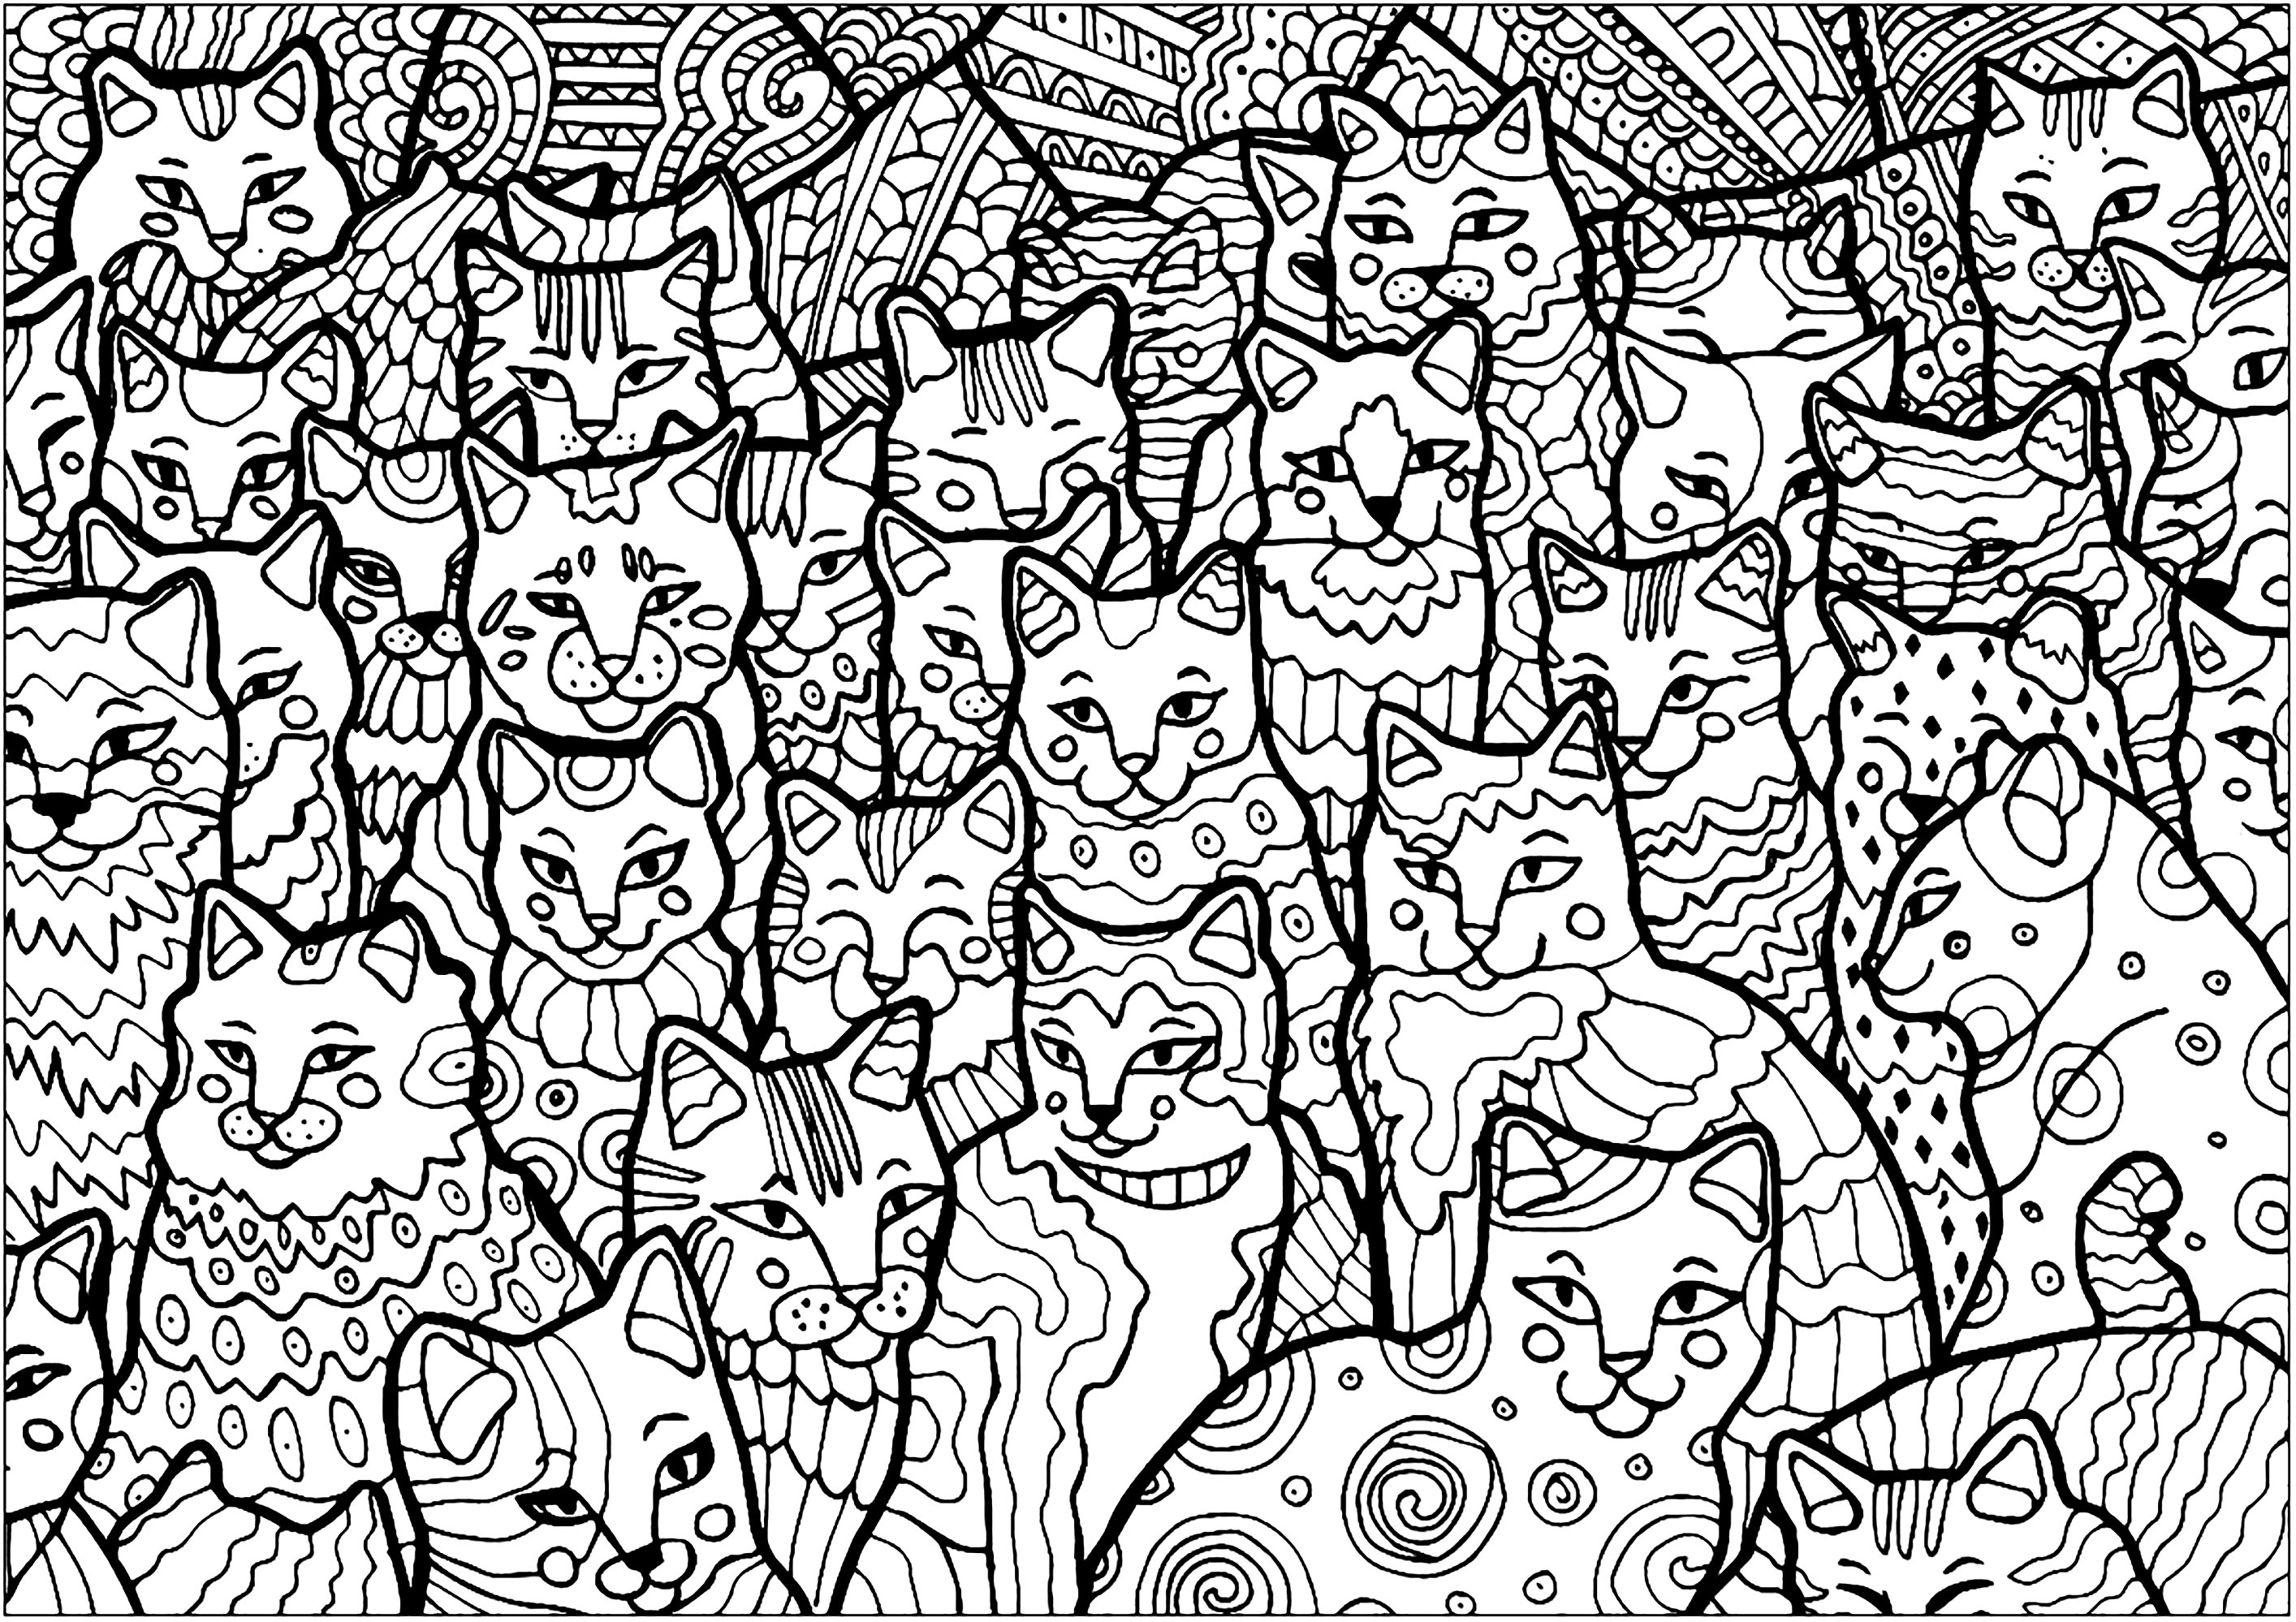 Estes gatos ocupam a página inteira, cabe-lhe a si colori-los!. Uma coloração bastante complexa, cheia de detalhes... e gatos!